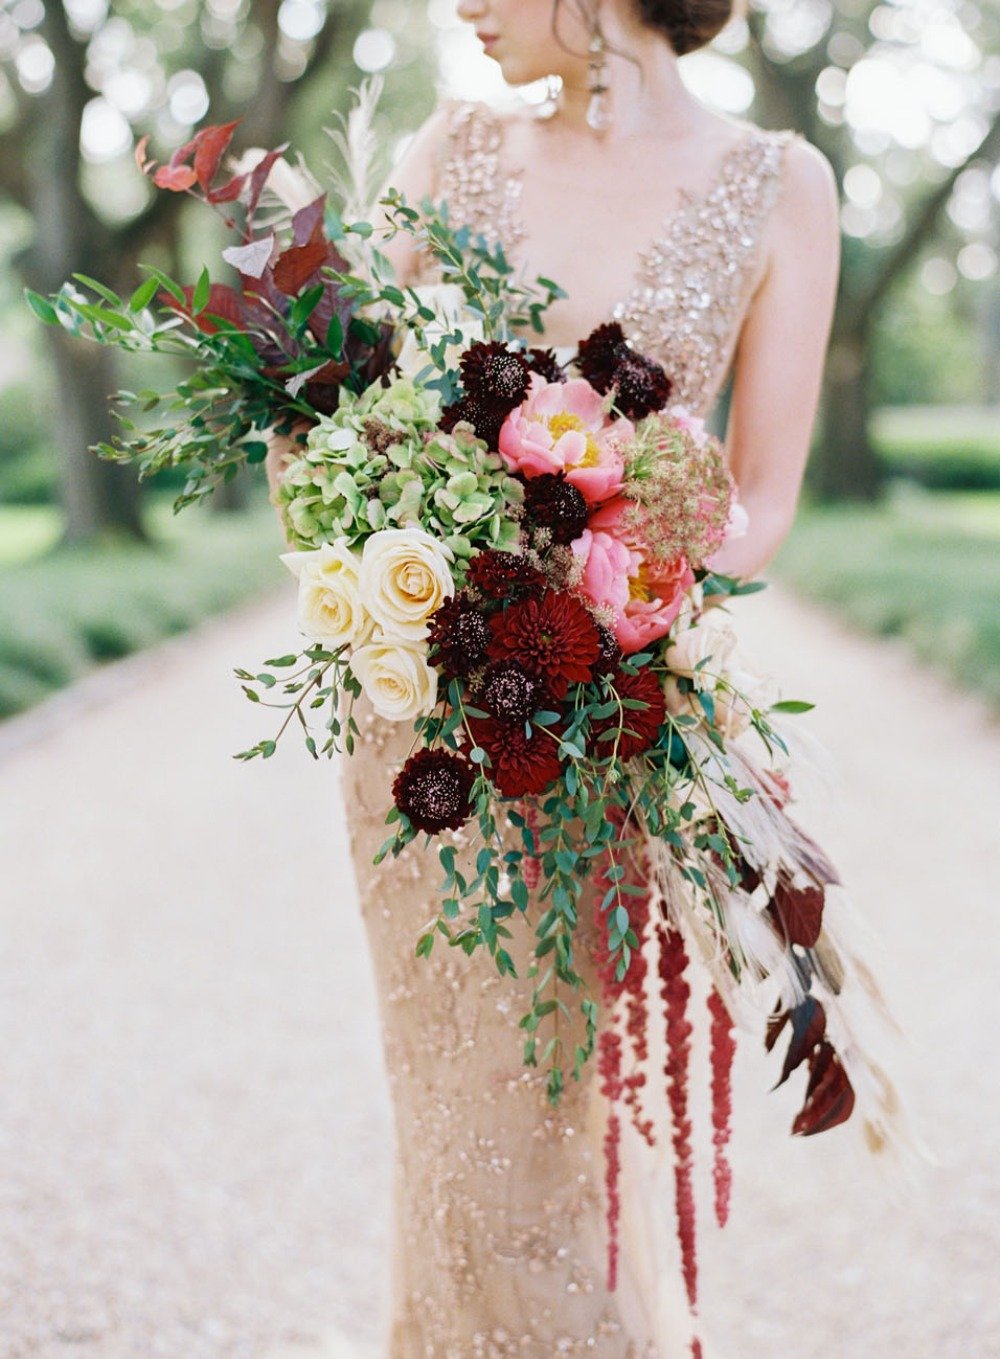 Stunning wedding bouquet